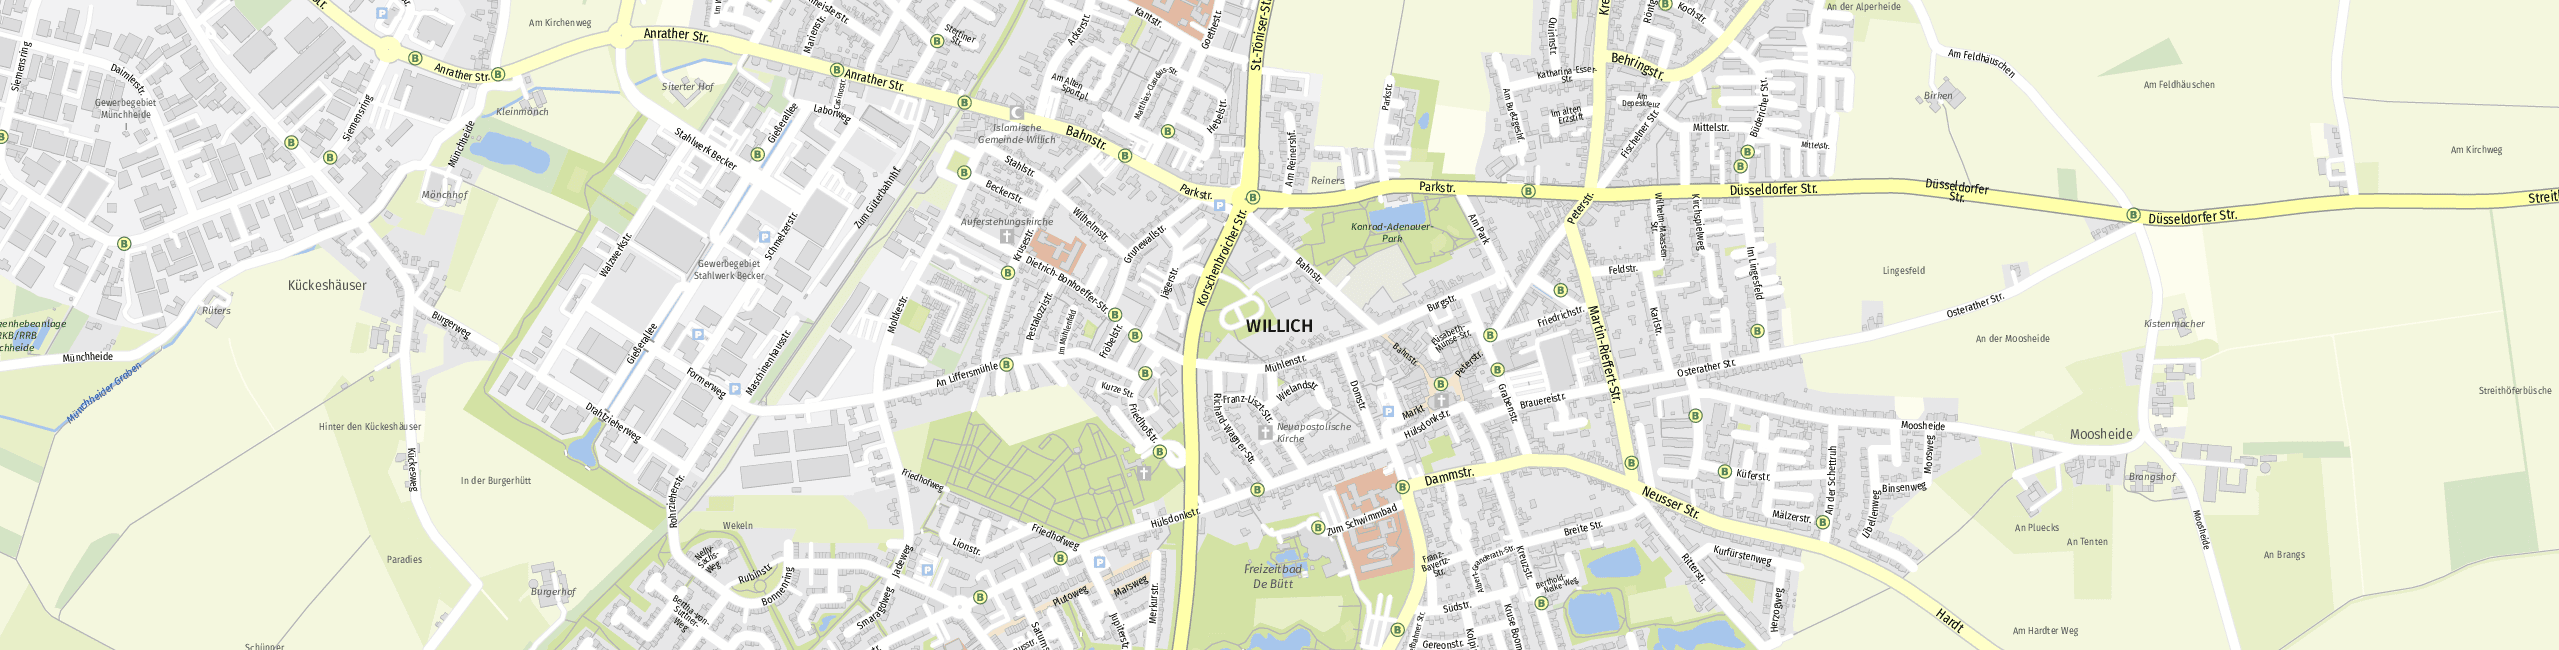 Stadtplan Willich zum Downloaden.